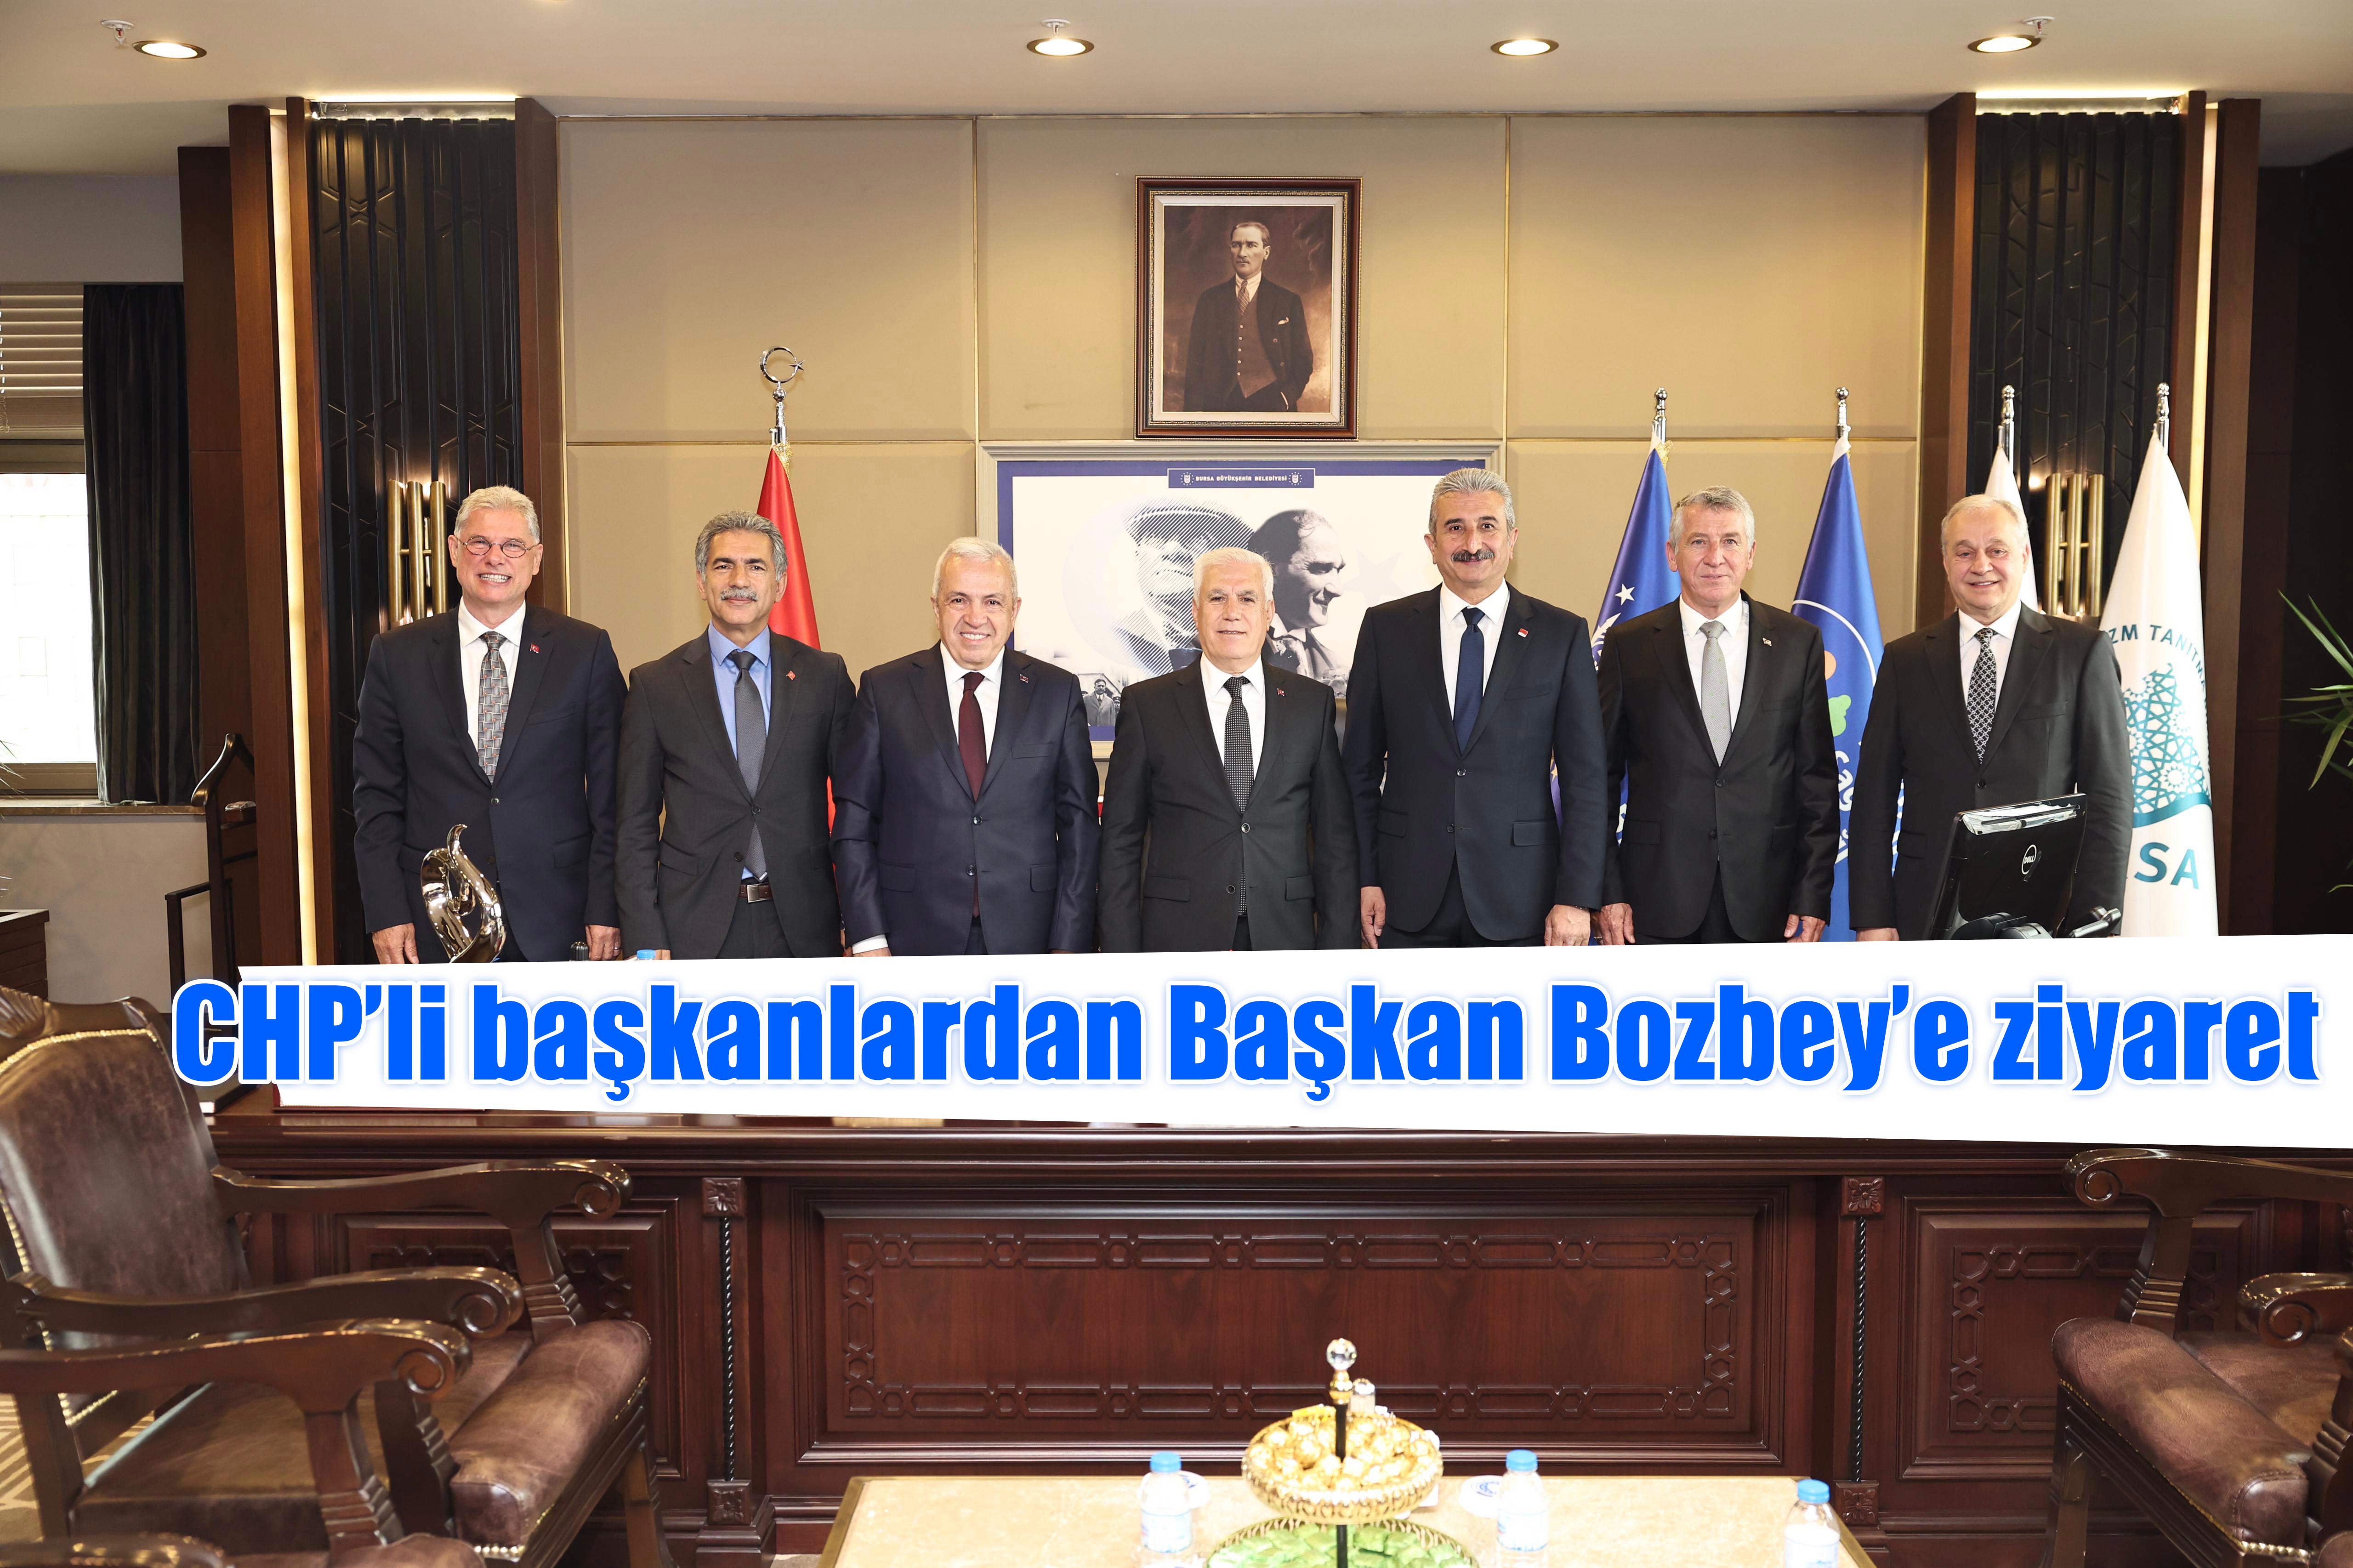 CHP’li başkanlardan Bozbey’e ziyaret